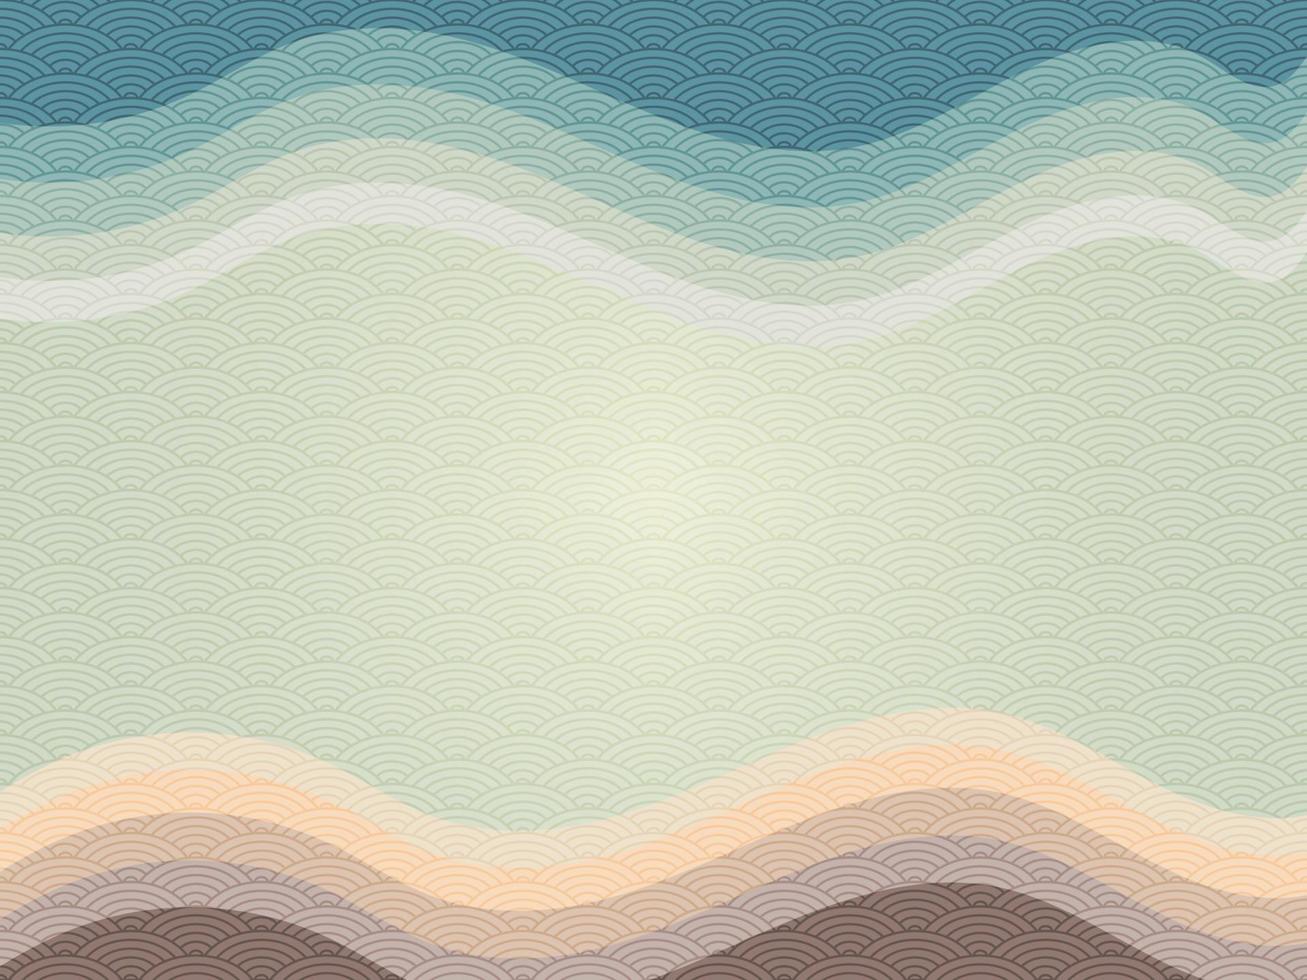 fondo de olas de tonos azules, verdes y marrones con un patrón de olas oceánicas japonesas en estilo antiguo. papel tapiz abstracto para estampados, decoración, arte mural y lienzos. vector